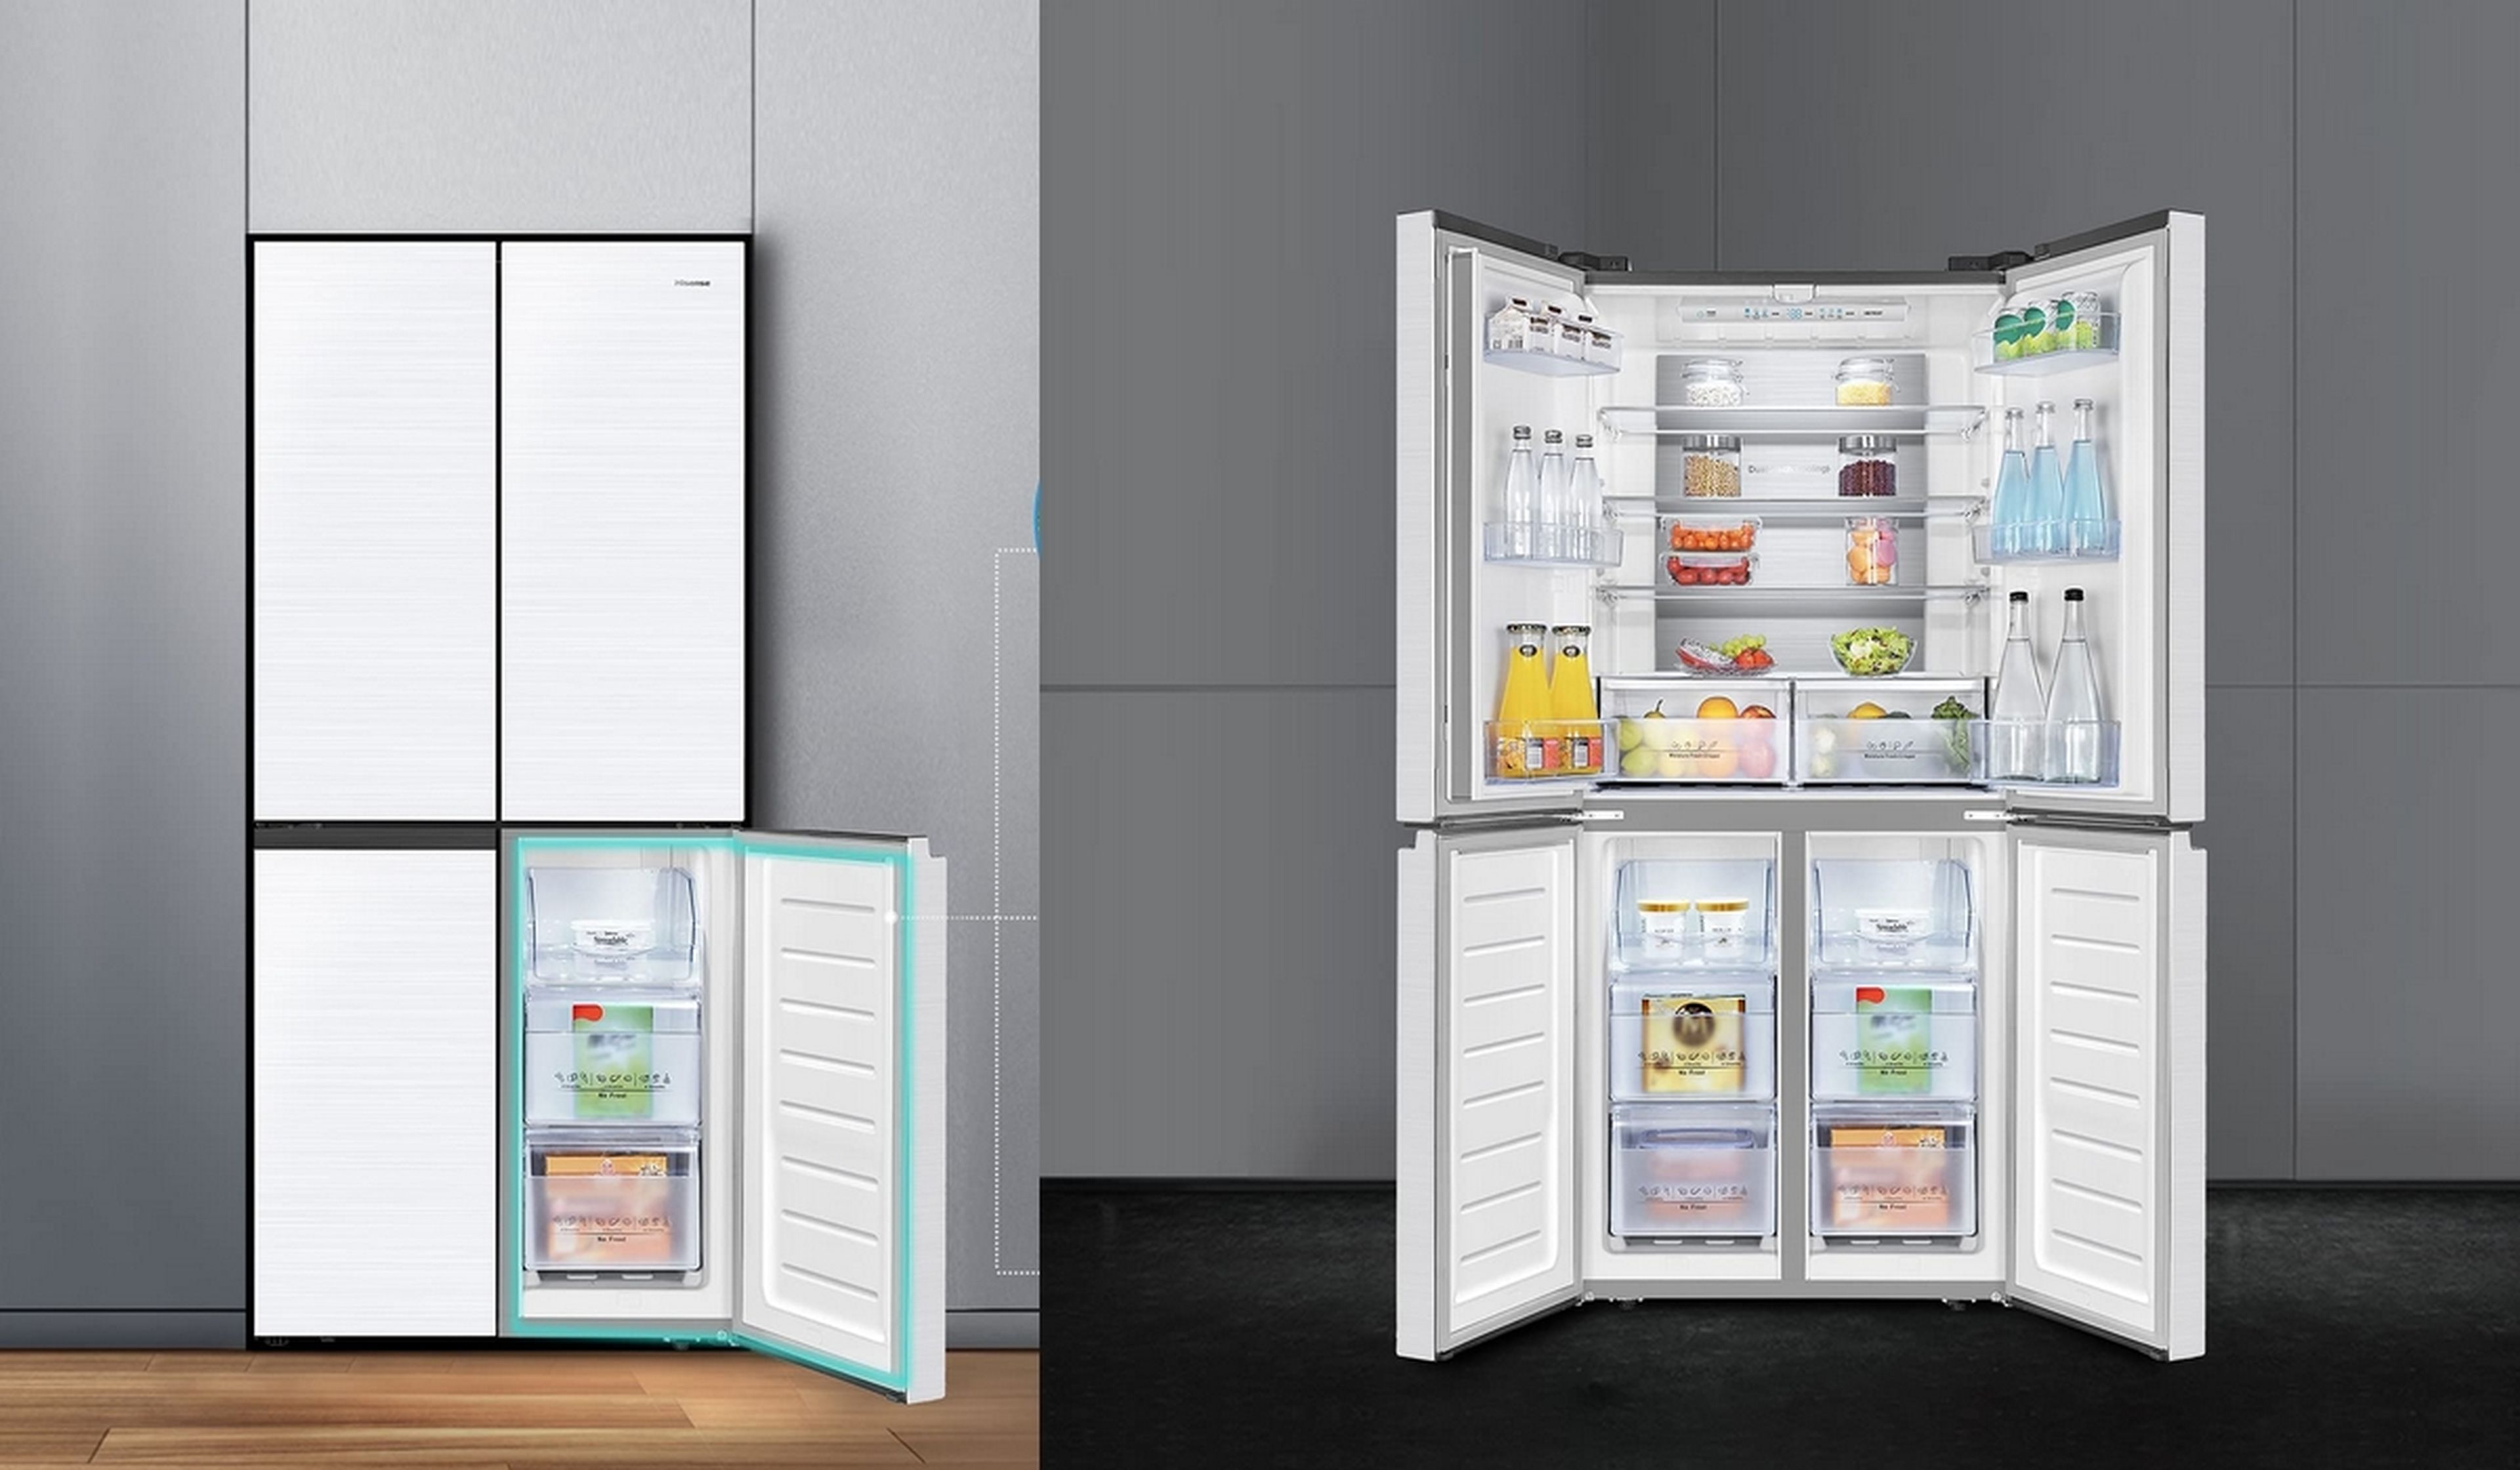 Este frigorífico americano HiSense es un modelo premium, recibe un